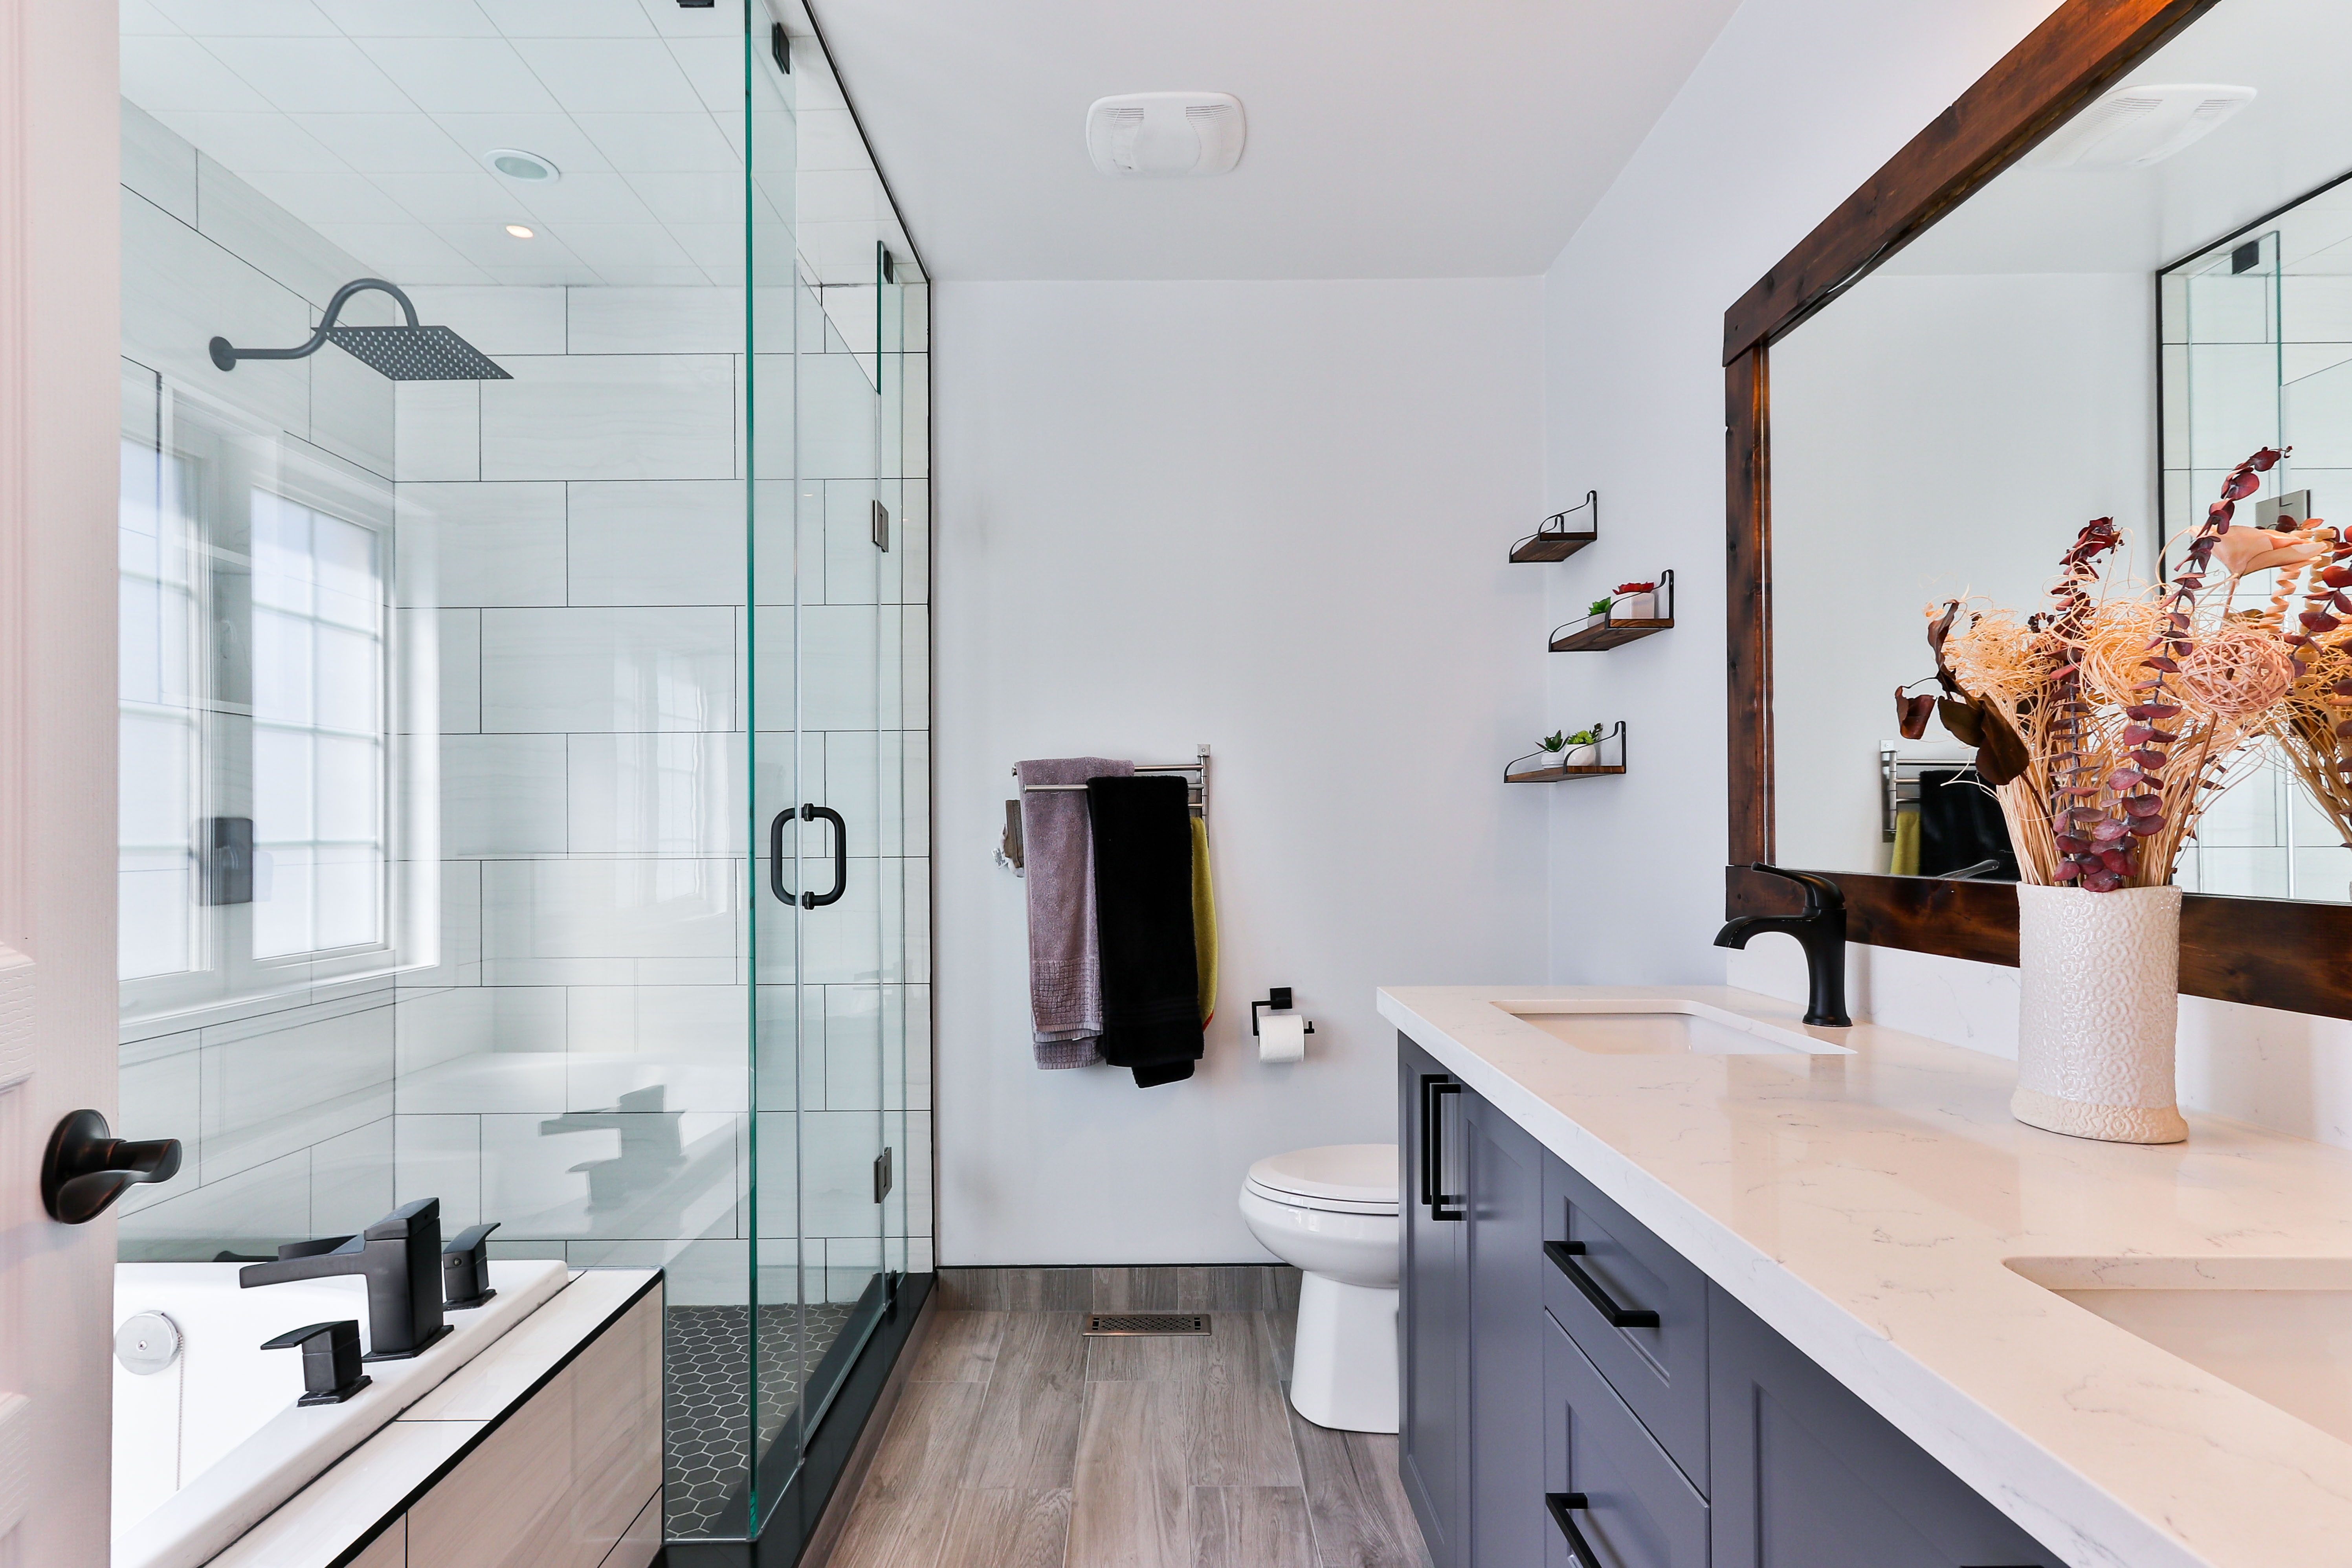 10 astuces pour nettoyer salle de bain et toilettes 